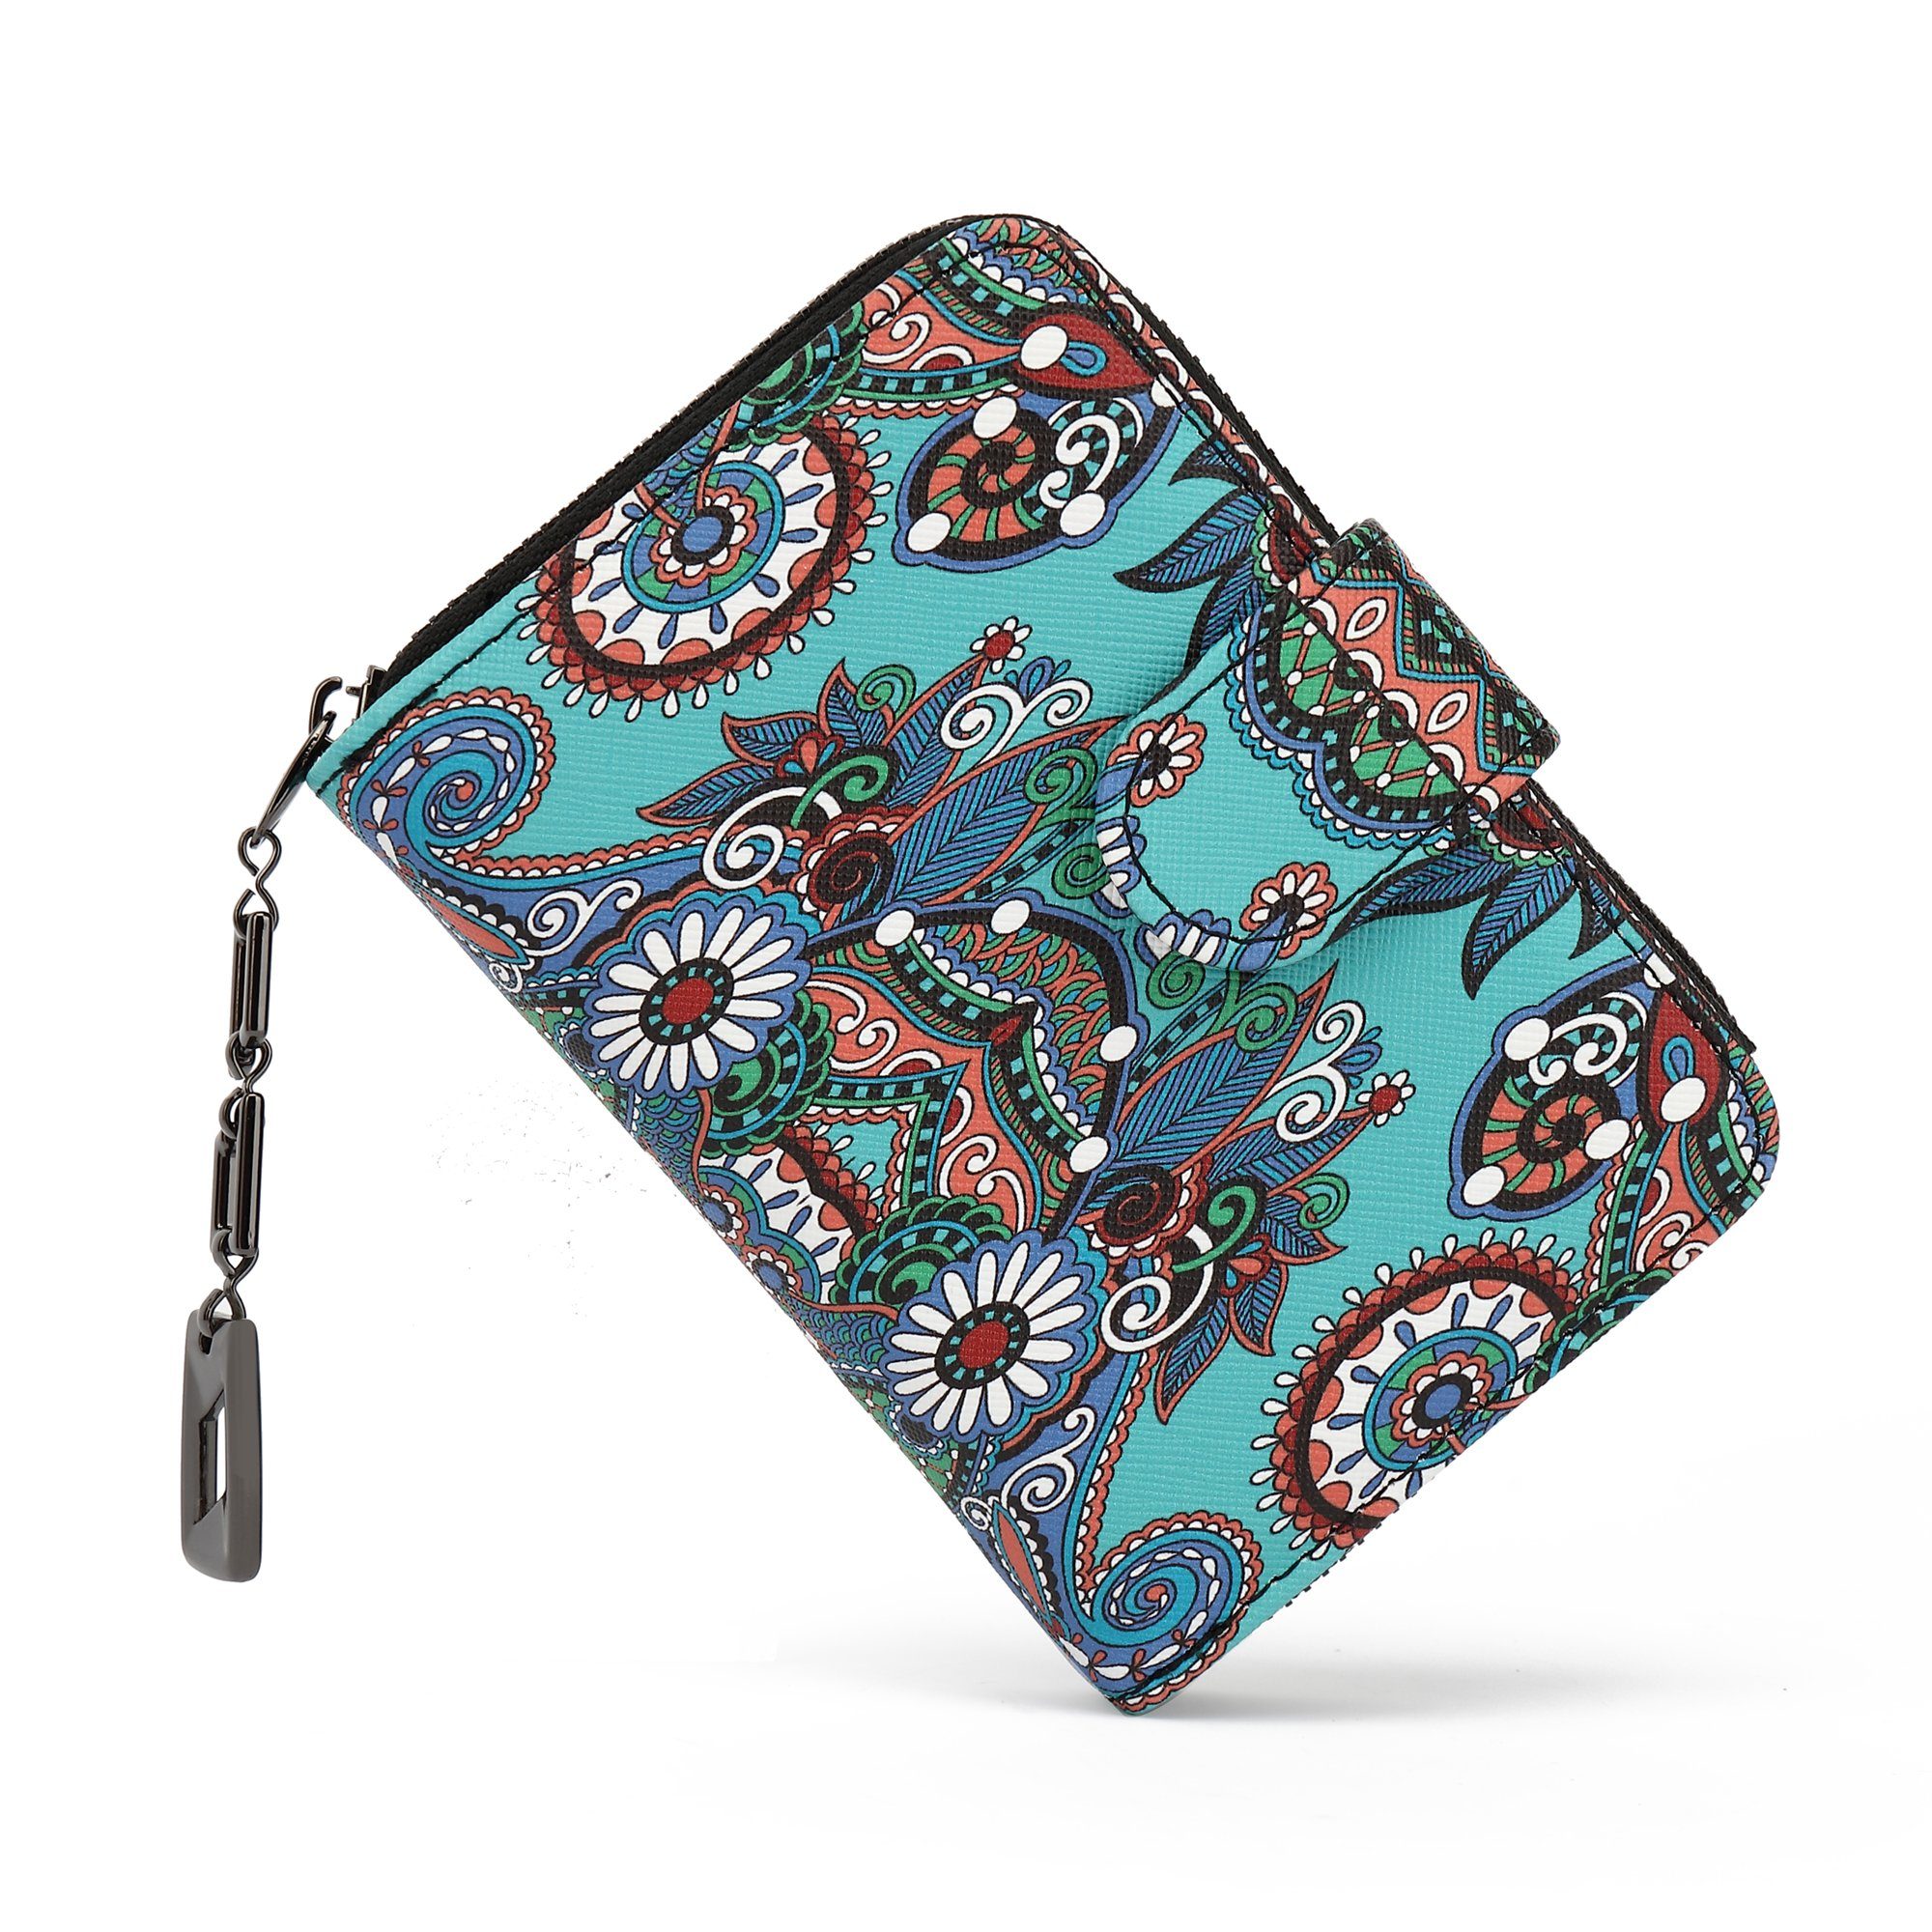 TAN.TOMI Brieftasche Geldbeutel mit Blumen- und Blütenmuster im Mandala Stil, Praktische Aufteilung mit viel Platz Grüne Blume-MC2